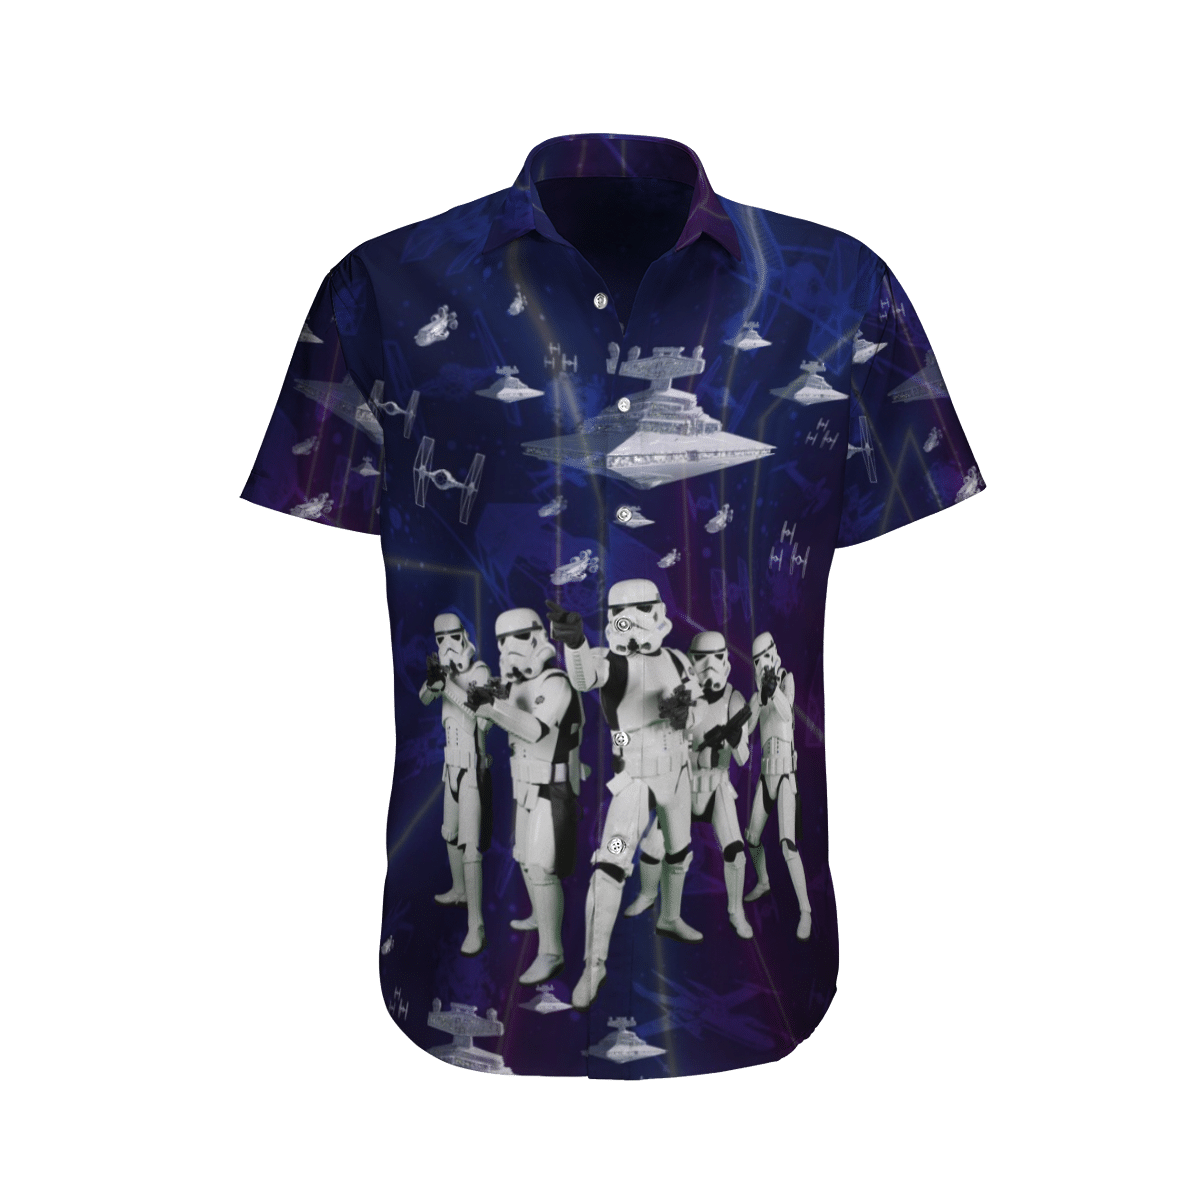 Star wars 5 Stormtroopers Spaceship Hawaiian Shirt